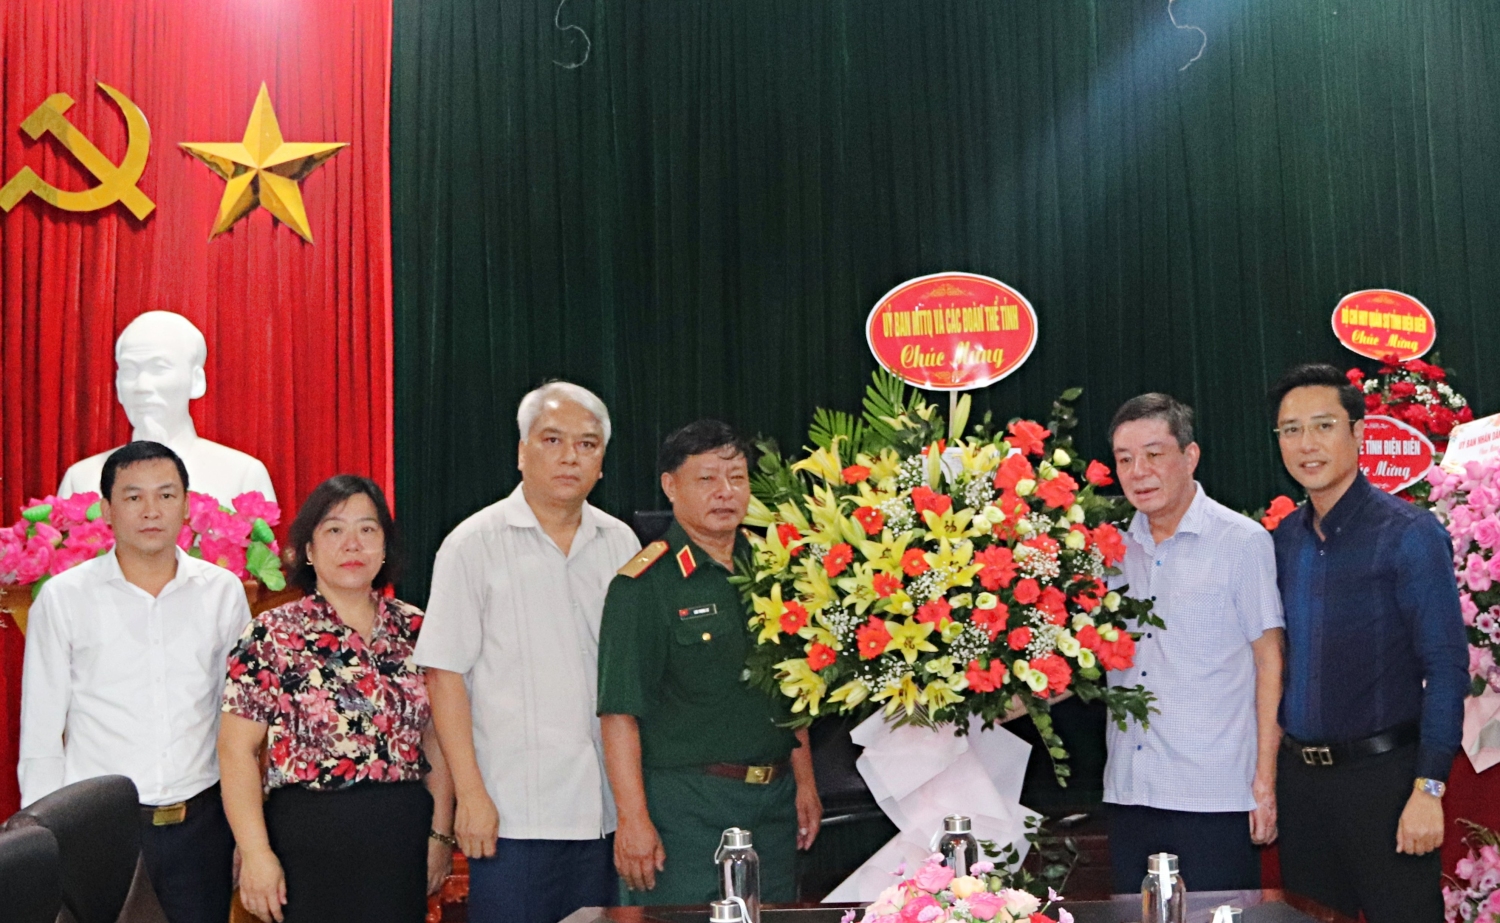 03 Tin chúc mừng ngày Báo chí cách mạng Việt Nam 02